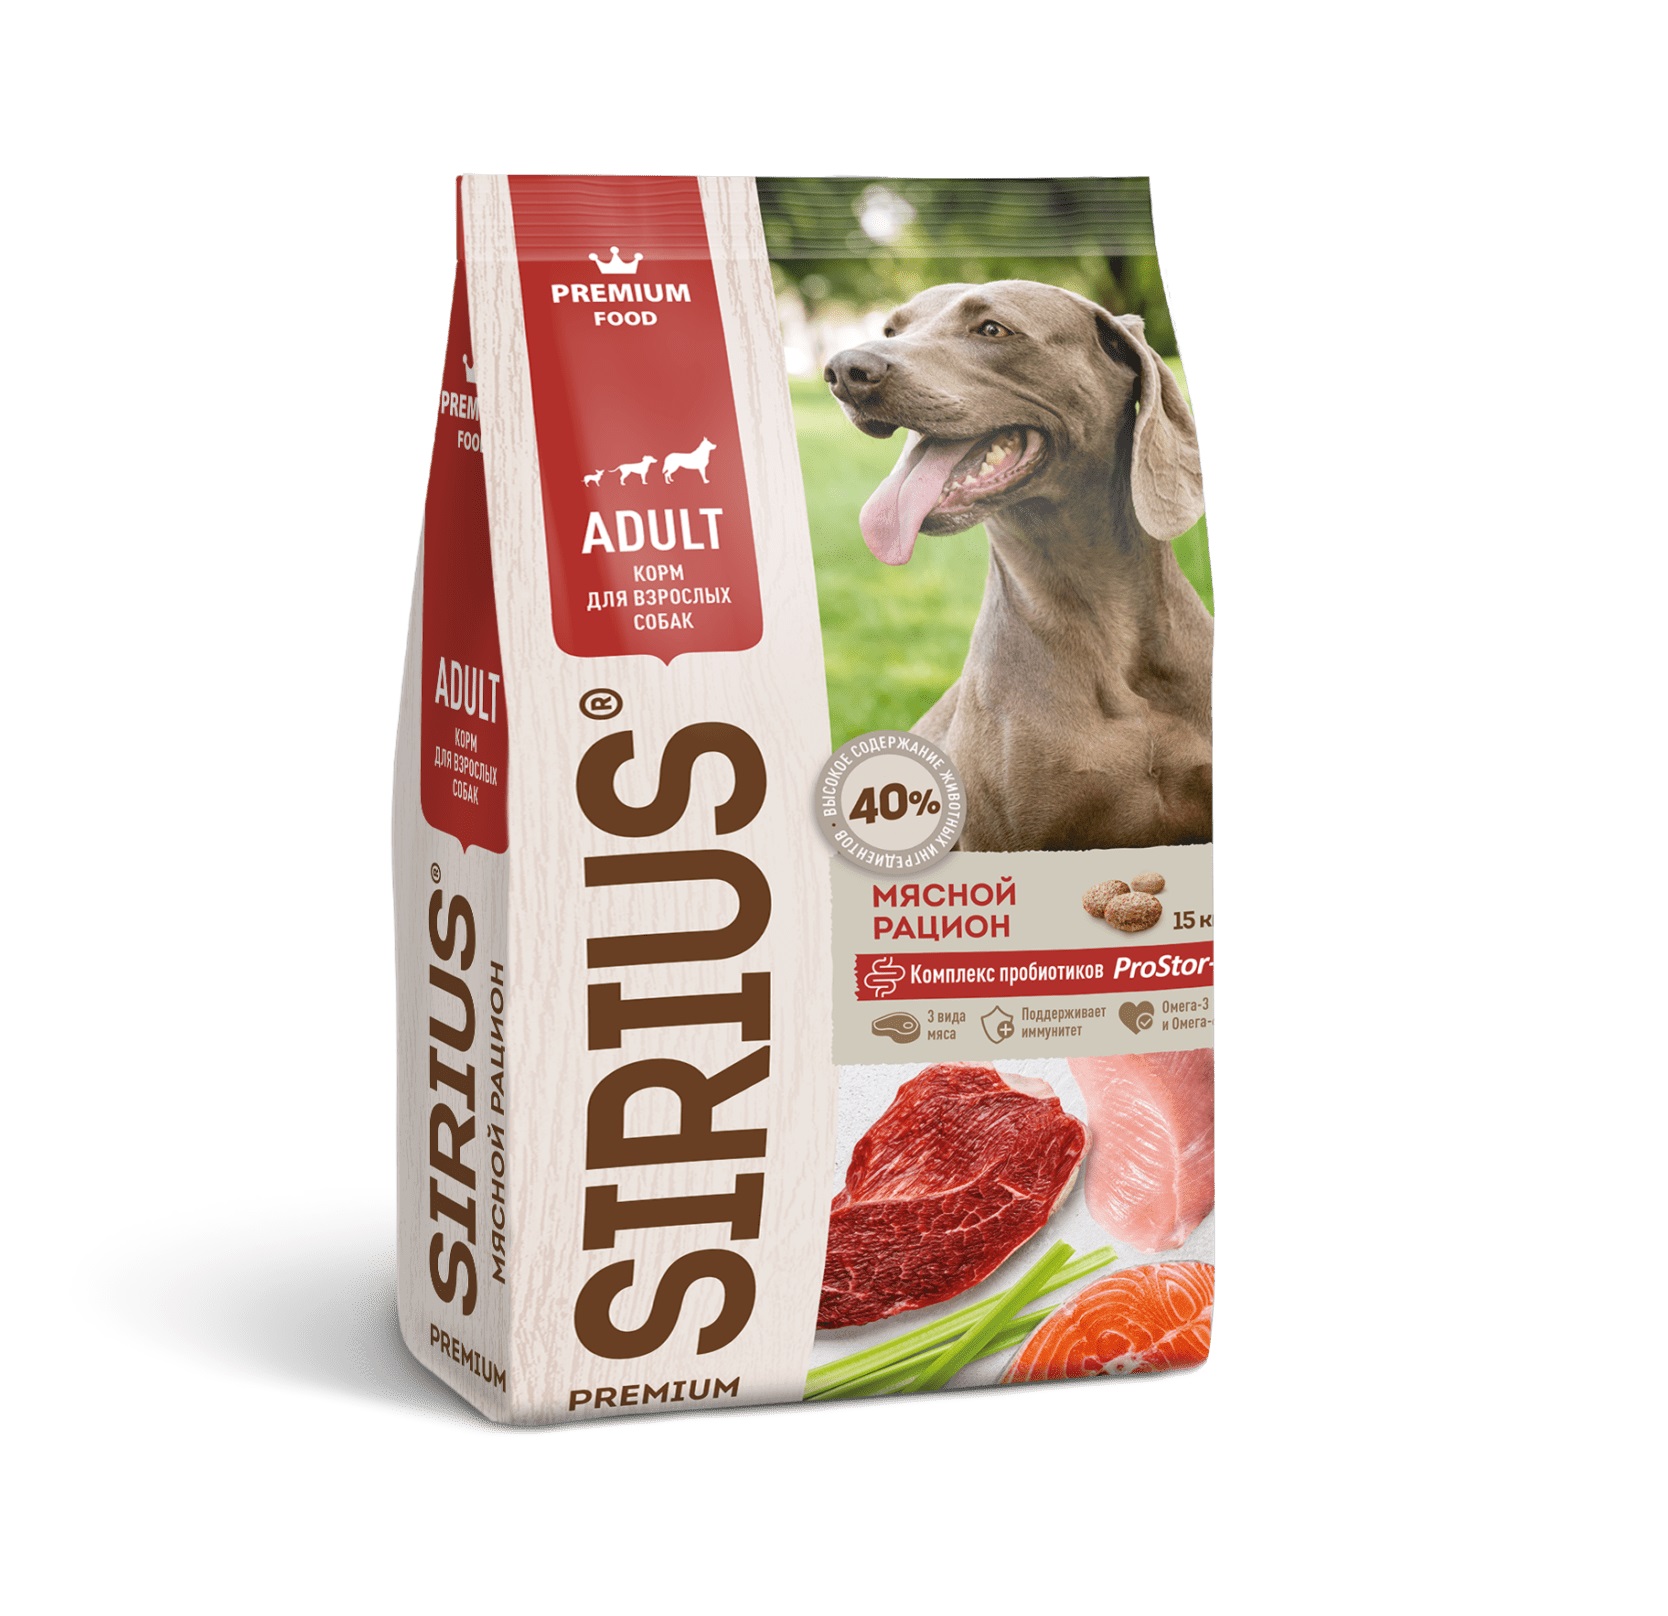 Сириус 15кг - для собак Мясной рацион (Sirius) + Подарок